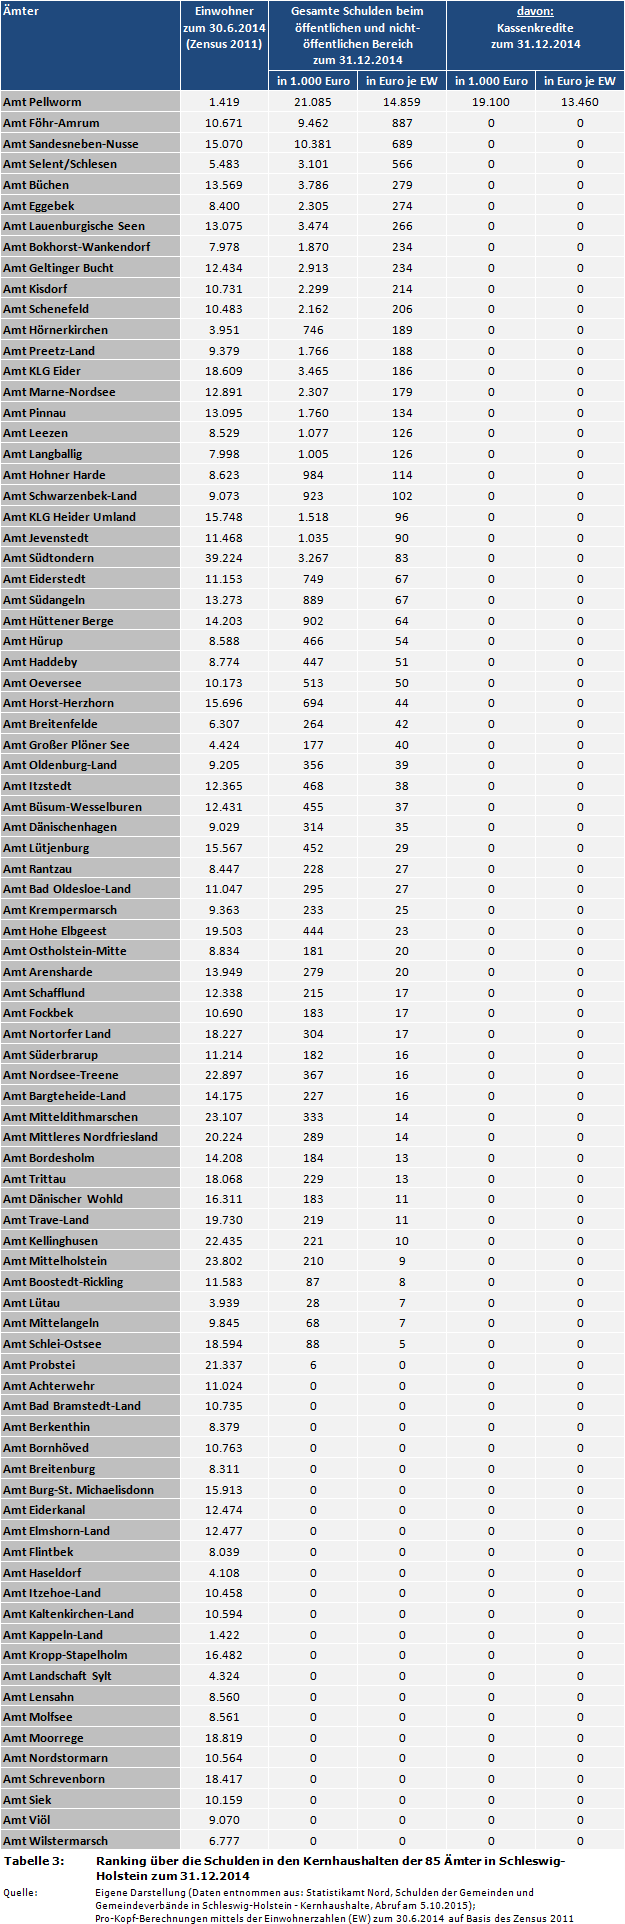 Ranking über die Schulden in den Kernhaushalten der 85 Ämter in Schleswig-Holstein zum 31.12.2014